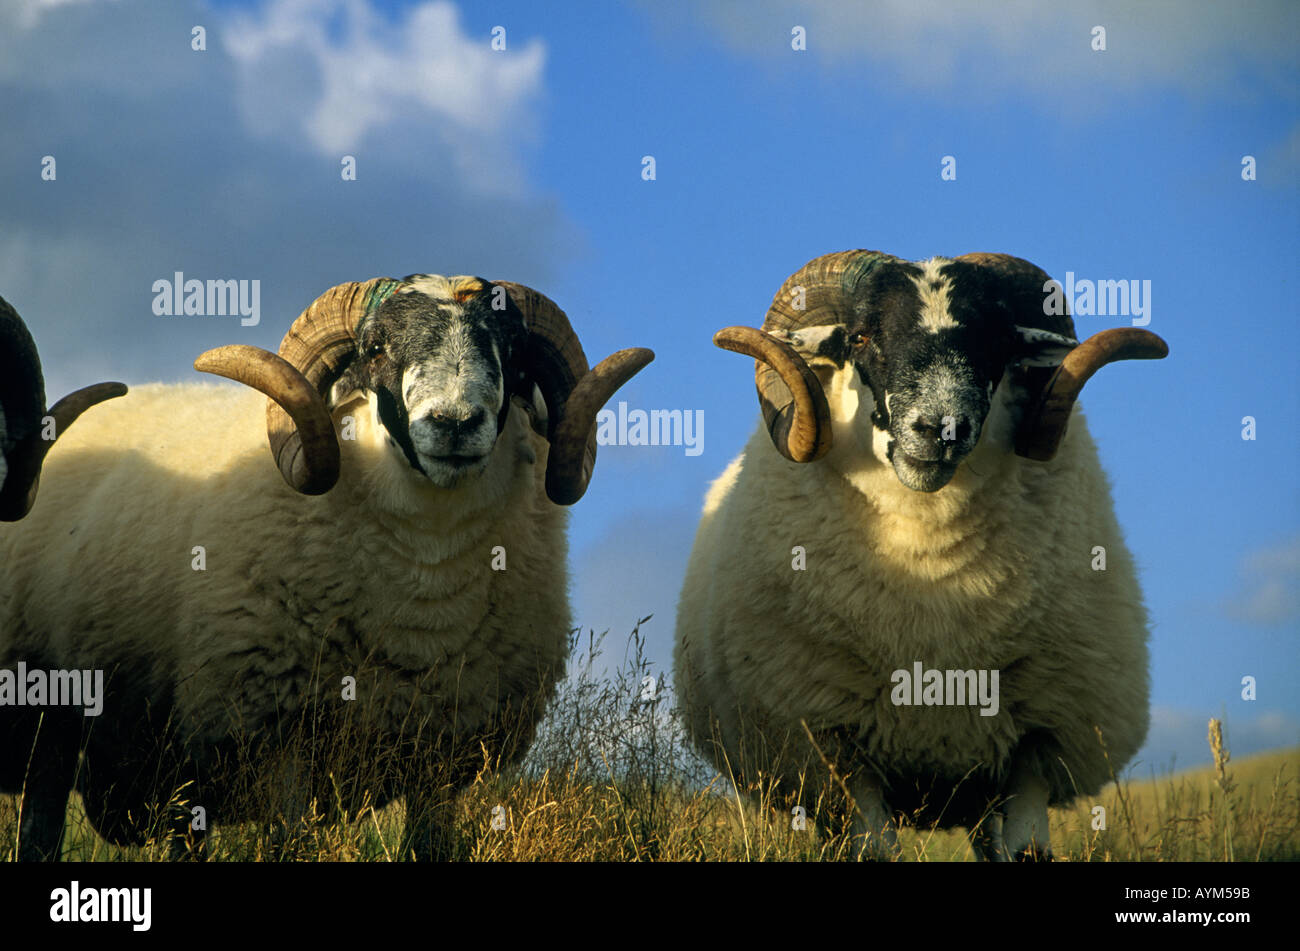 Tres carneros con cuernos rizados Strathbraan Perth Scotland Foto de stock